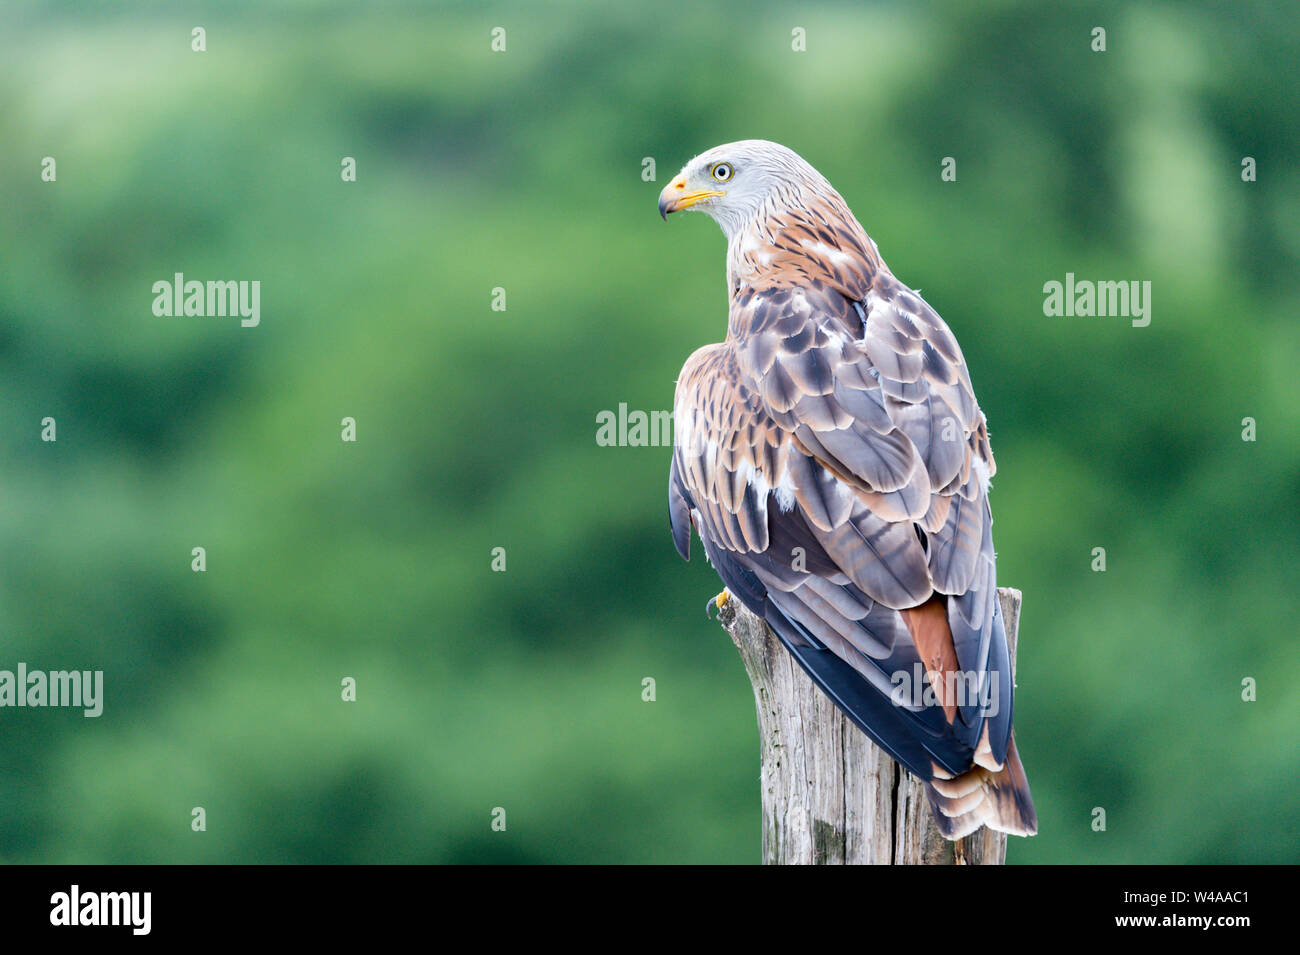 bird of prey, owl, falcon Stock Photo